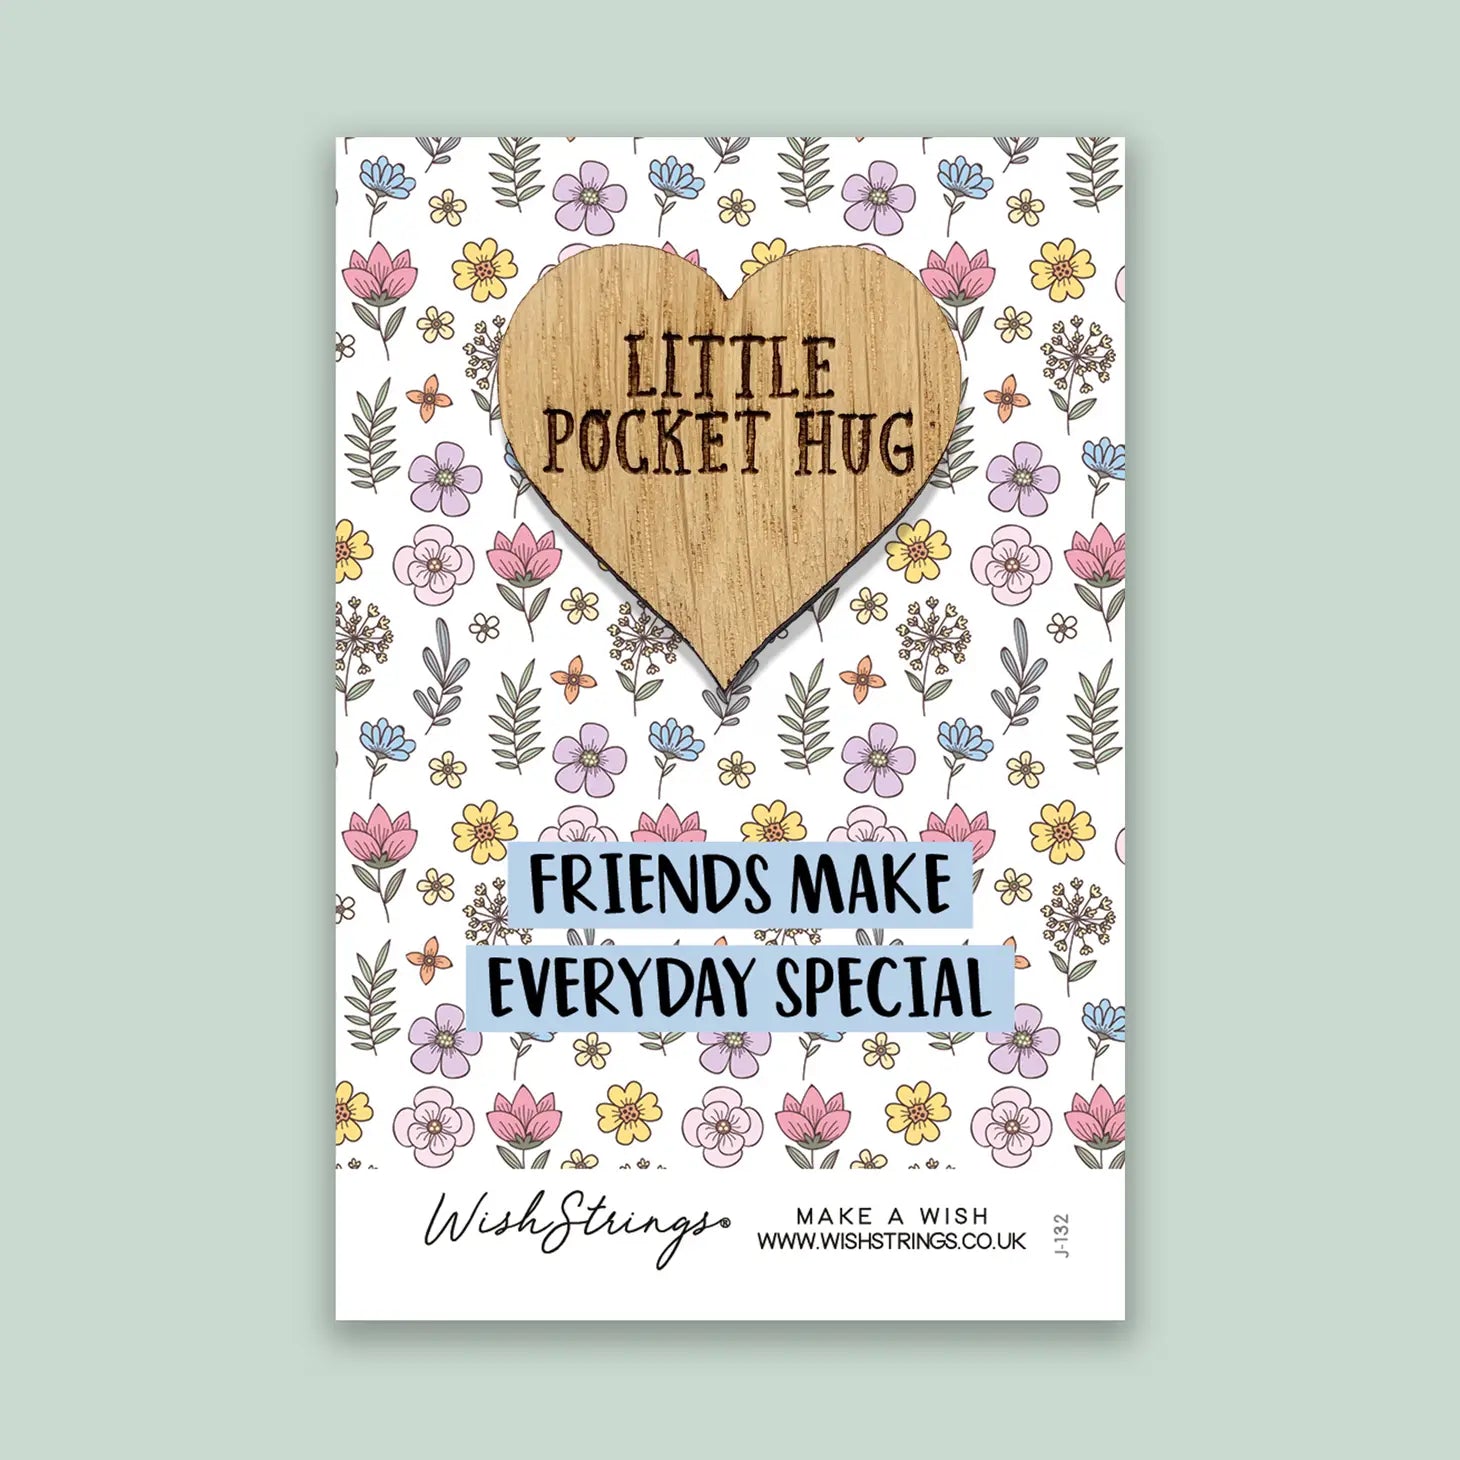 Friends Make Everyday Special  Little Pocket Hug - The Vintage Garden